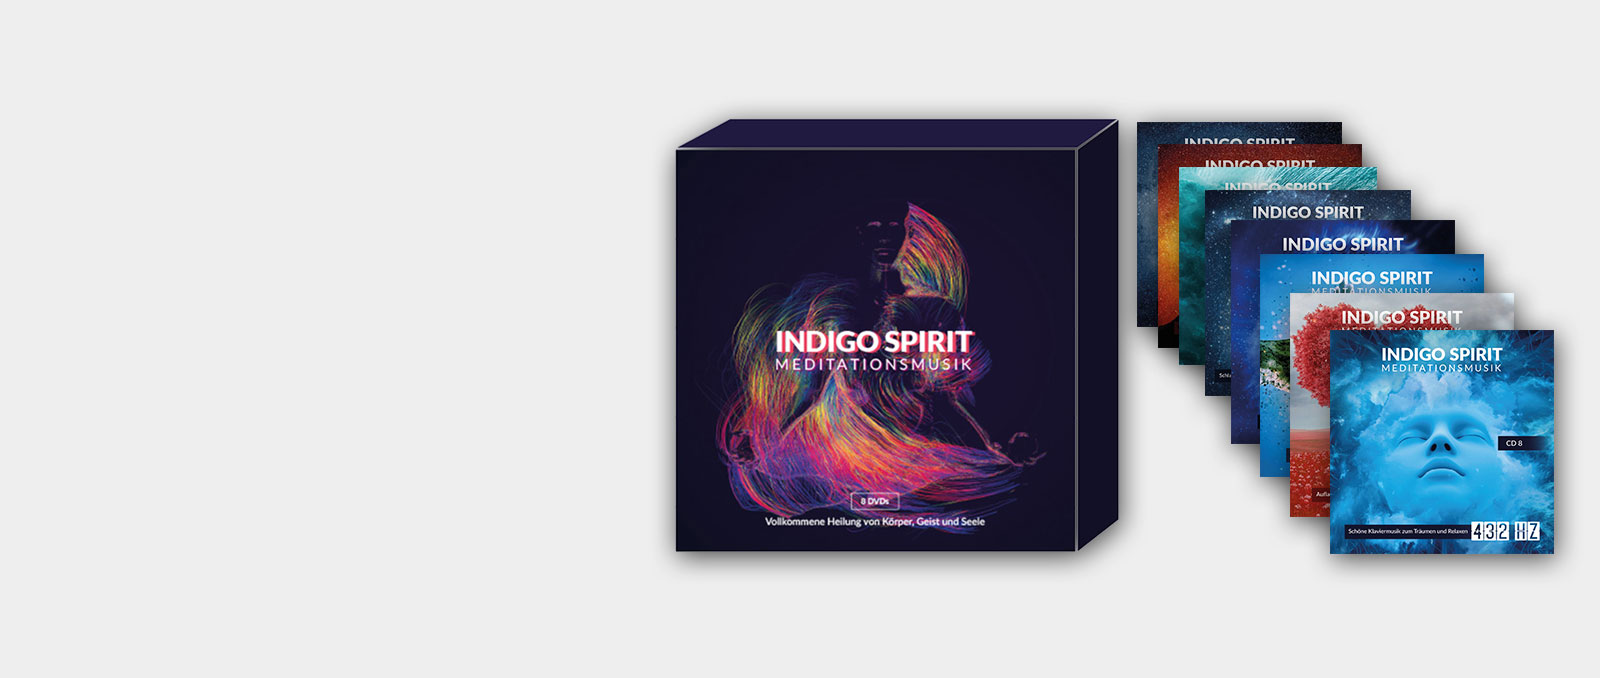 indigo-spirit-meditation